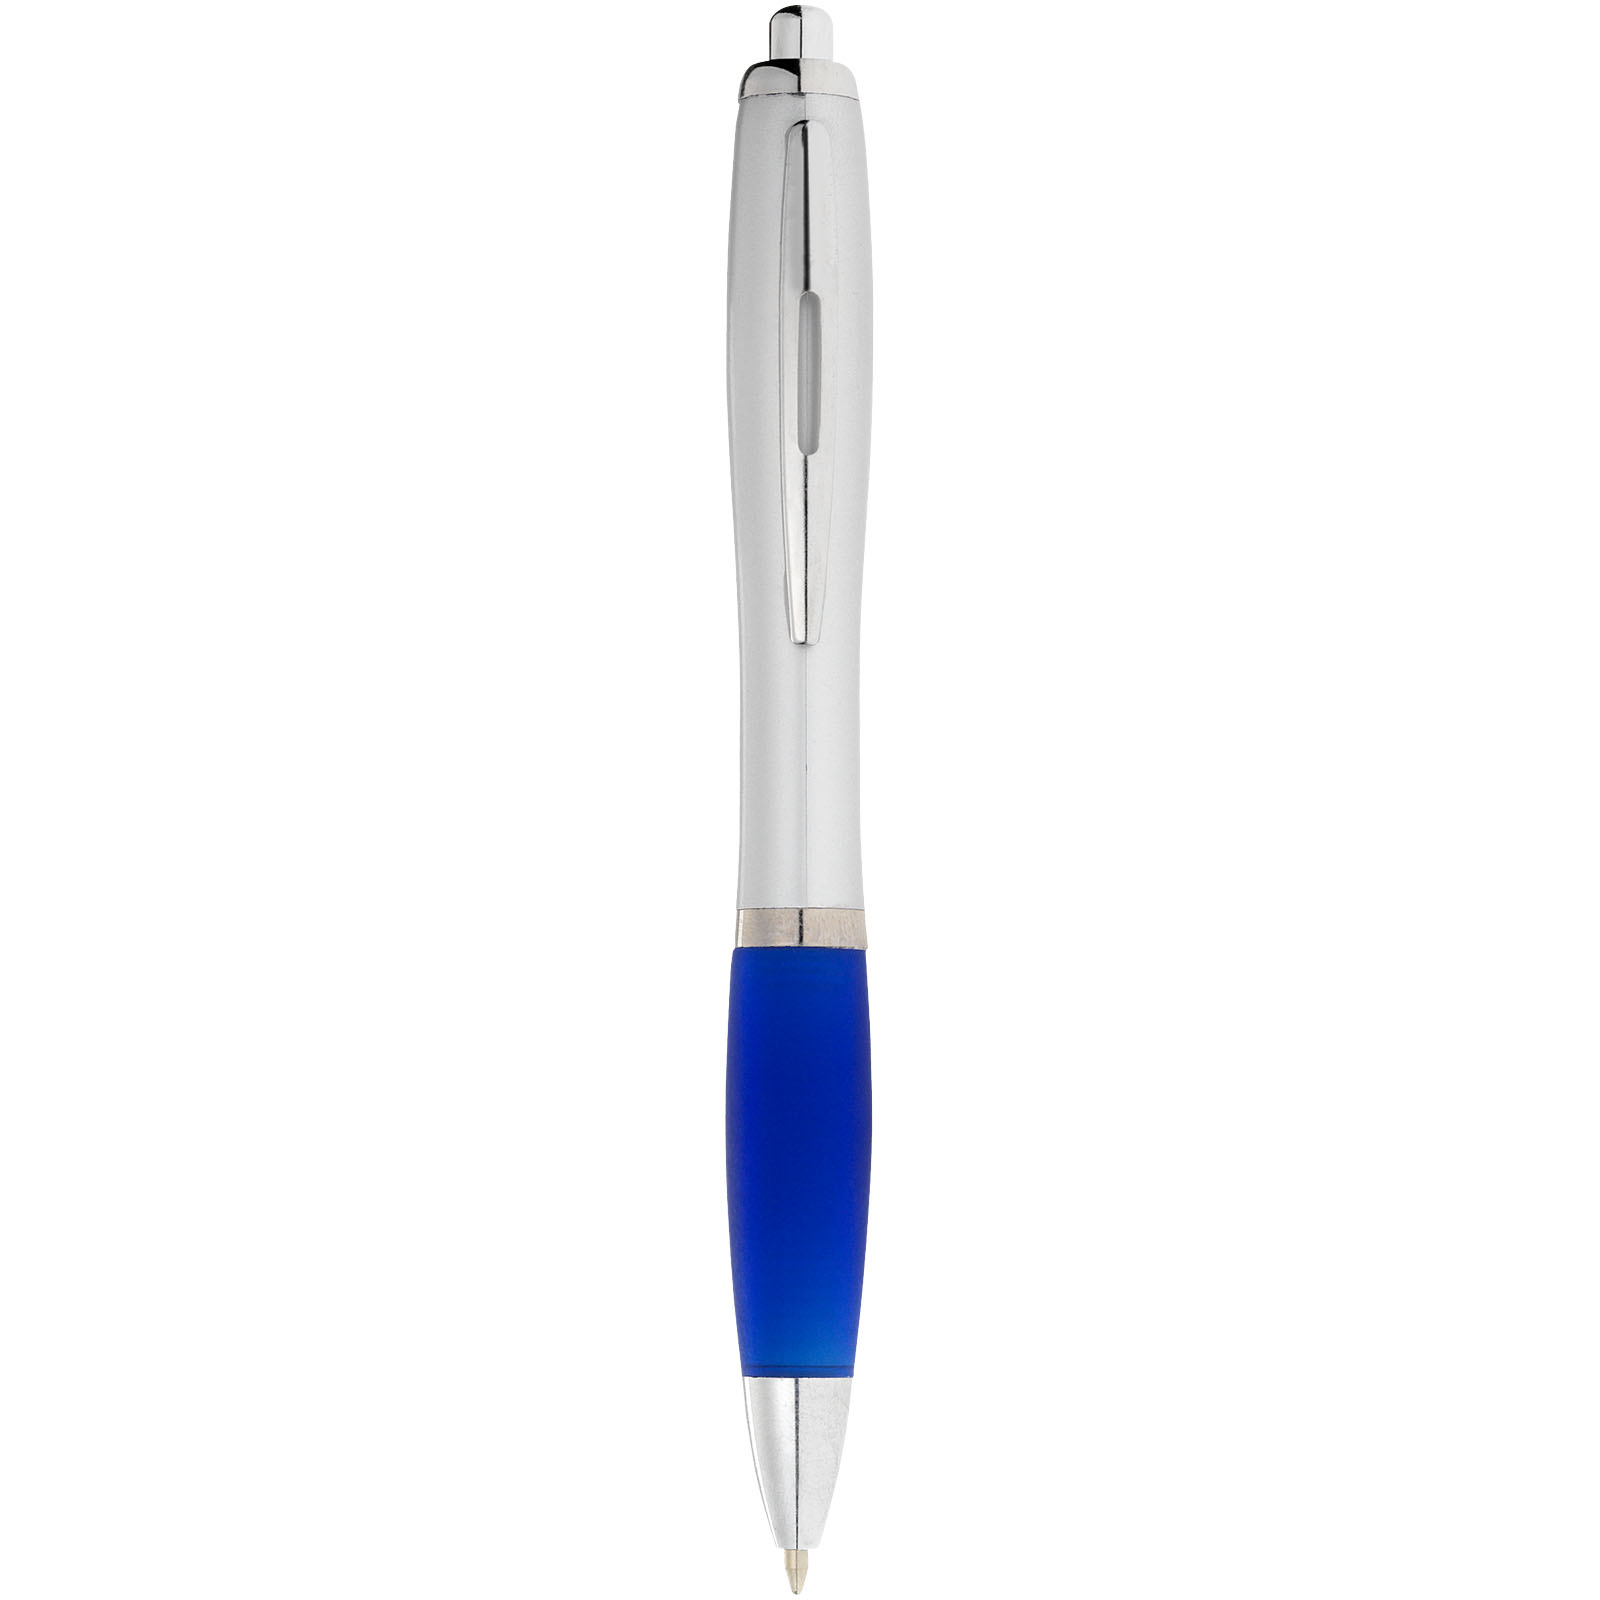 Advertising Ballpoint Pens - Nash ballpoint pen silver barrel and coloured grip